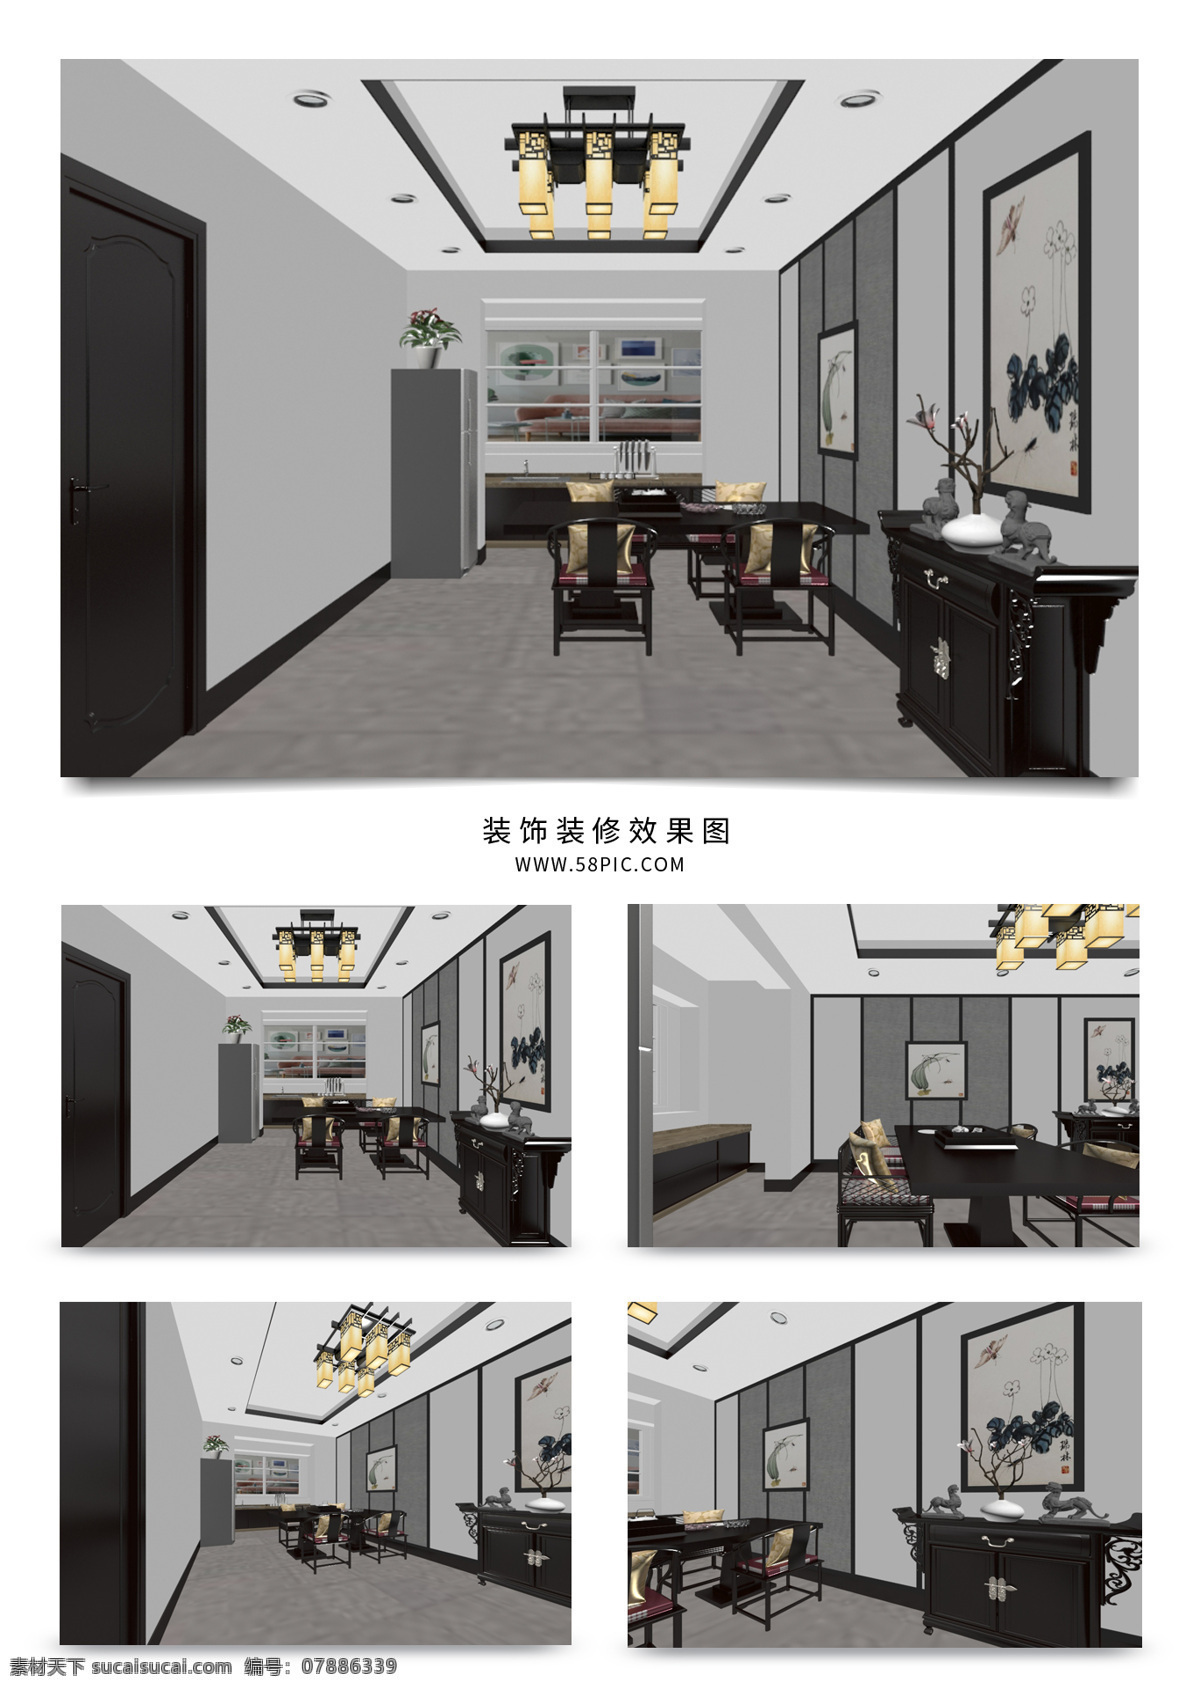 现代 新 中式 家装 餐厅 效果图 吊灯 新中式 餐厅效果图